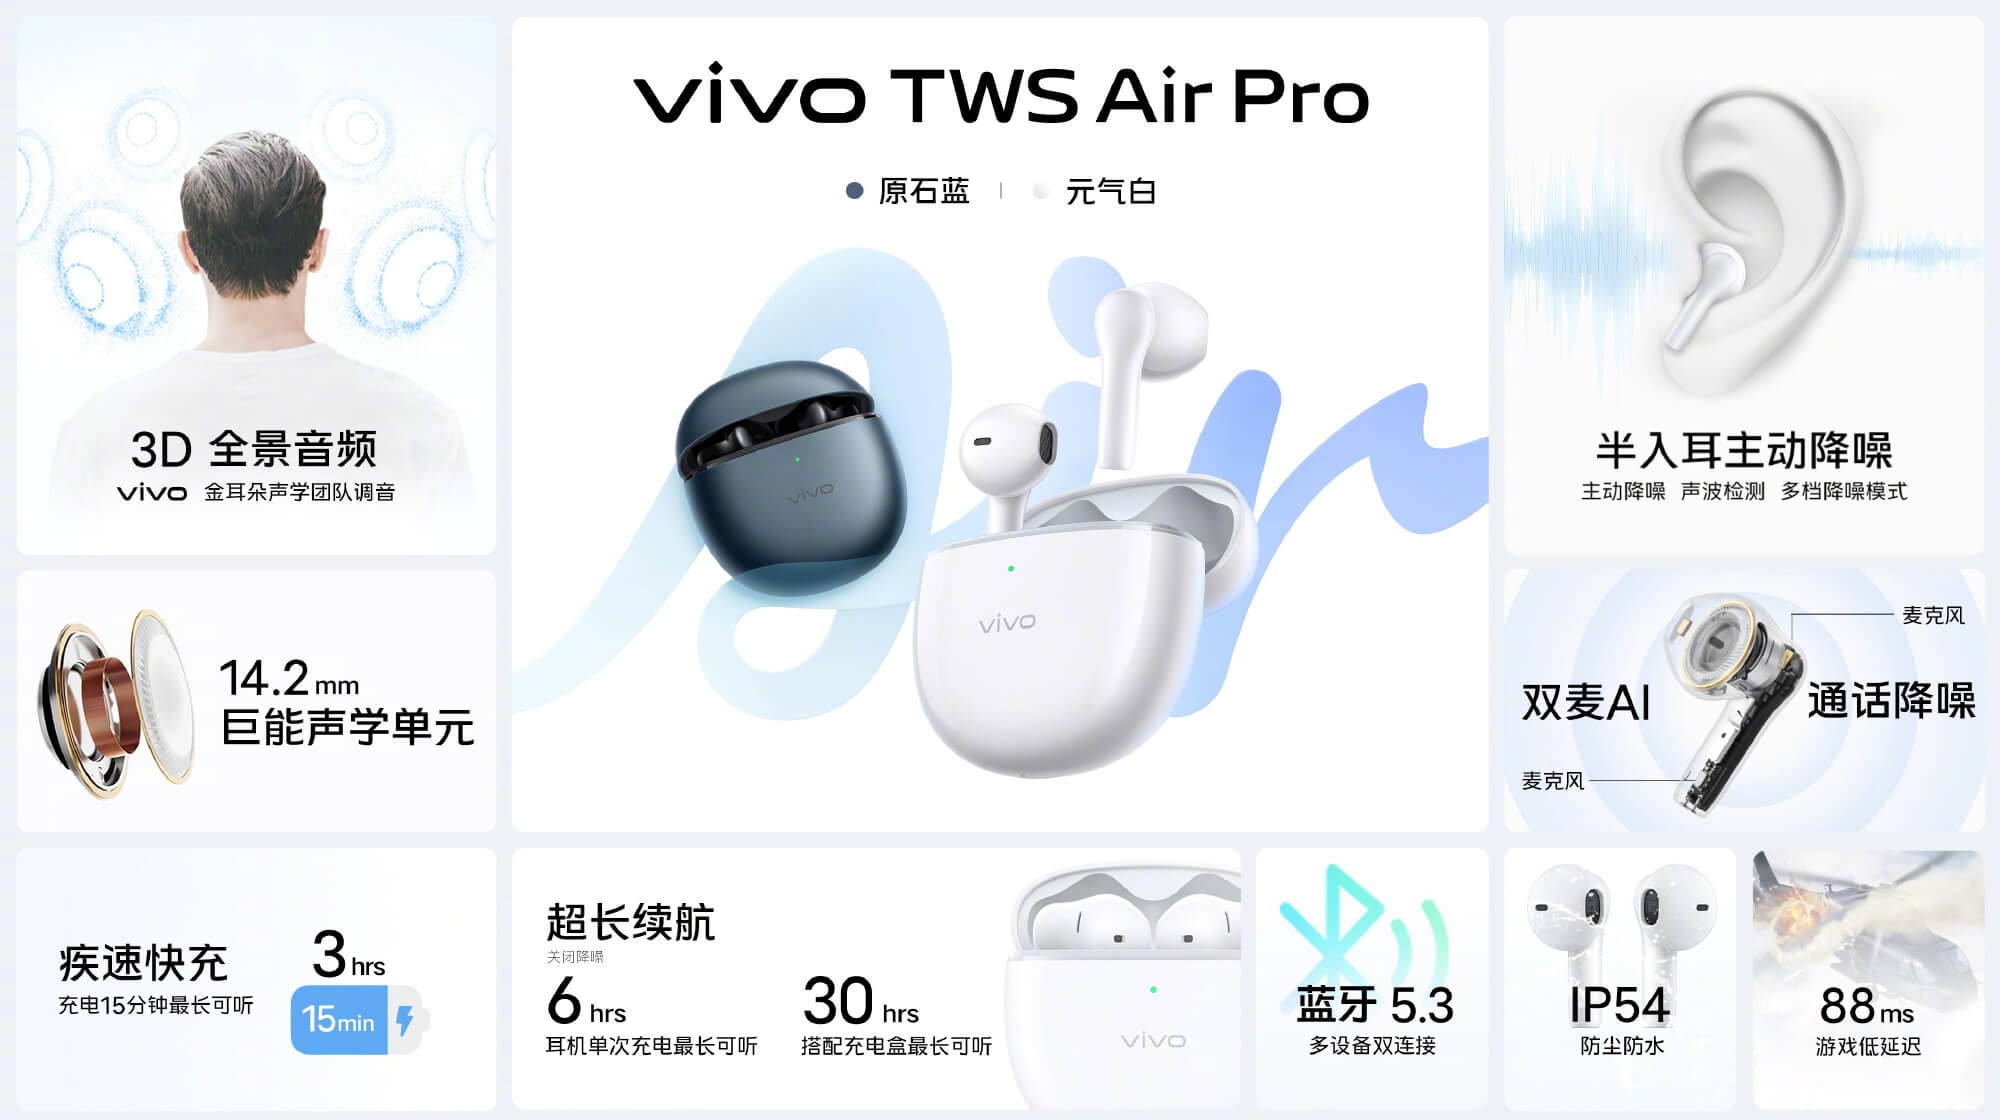 Vivo TWS Air Pro features cn